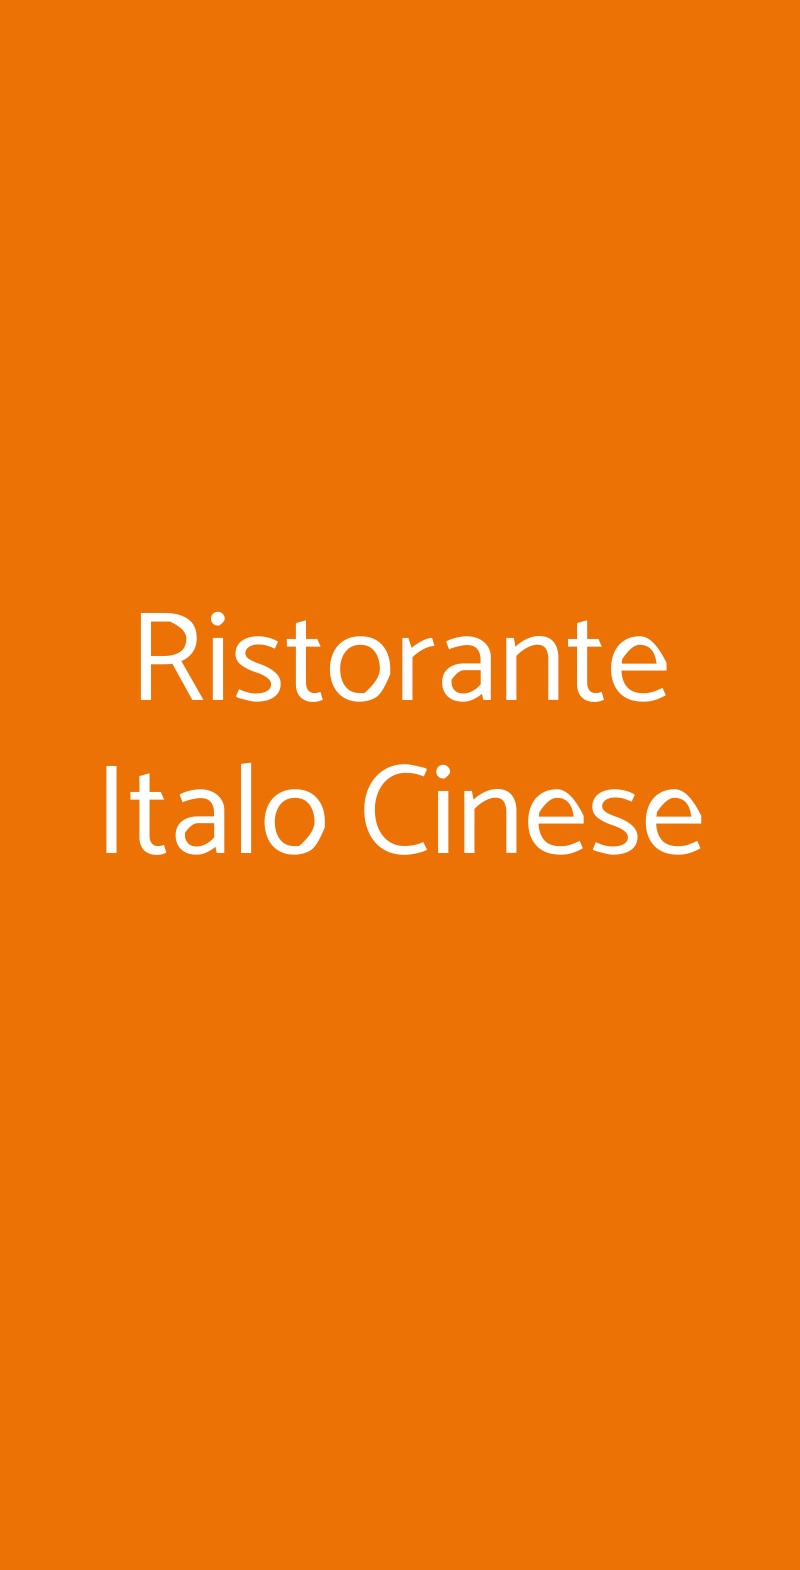 Ristorante Italo Cinese Milano menù 1 pagina